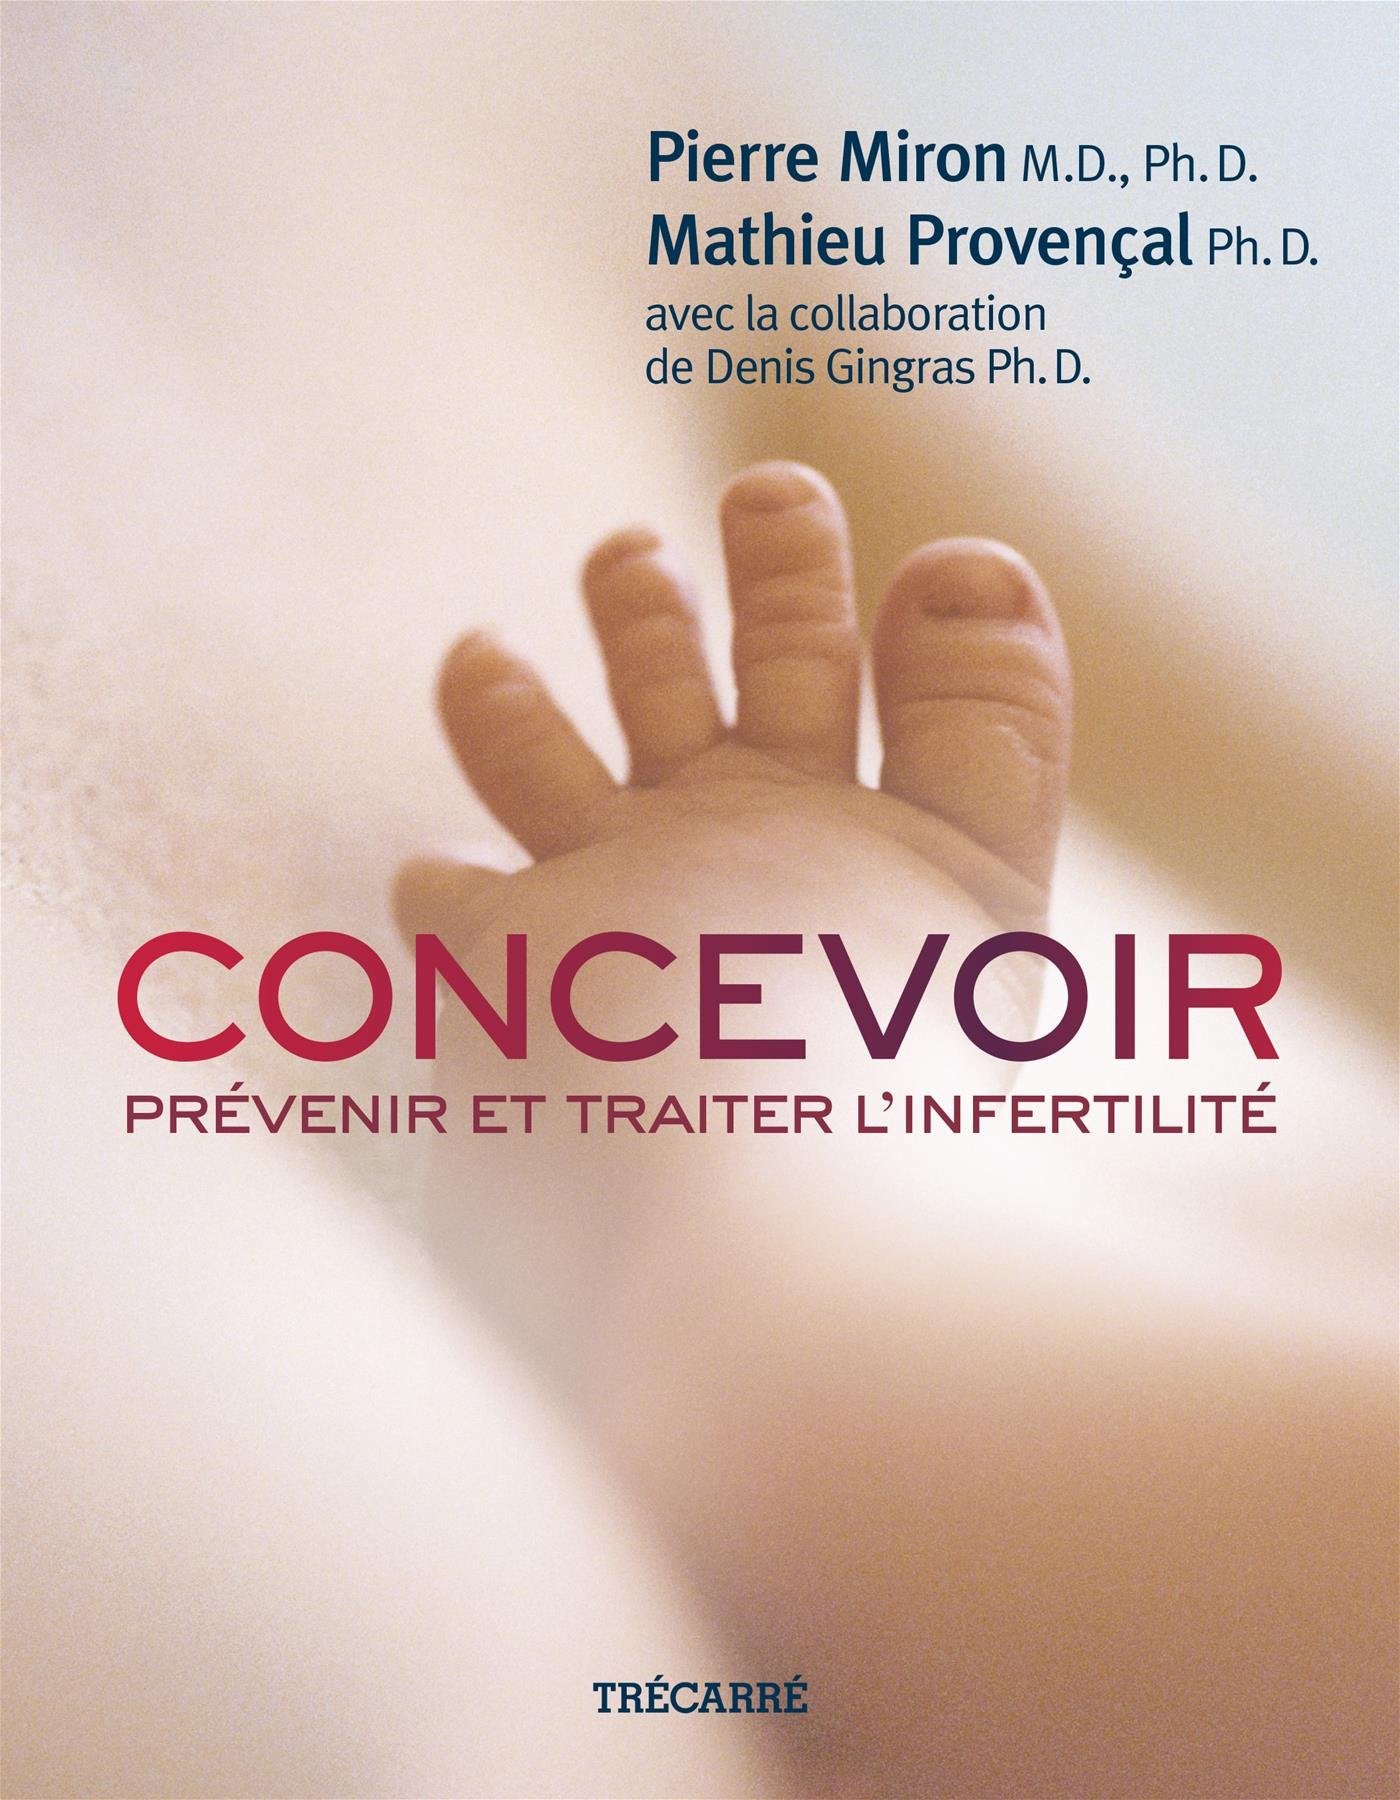 Livre ISBN 2895686092 Concevoir: Prévenir et traiter l'infertilité (Pierre Miron)